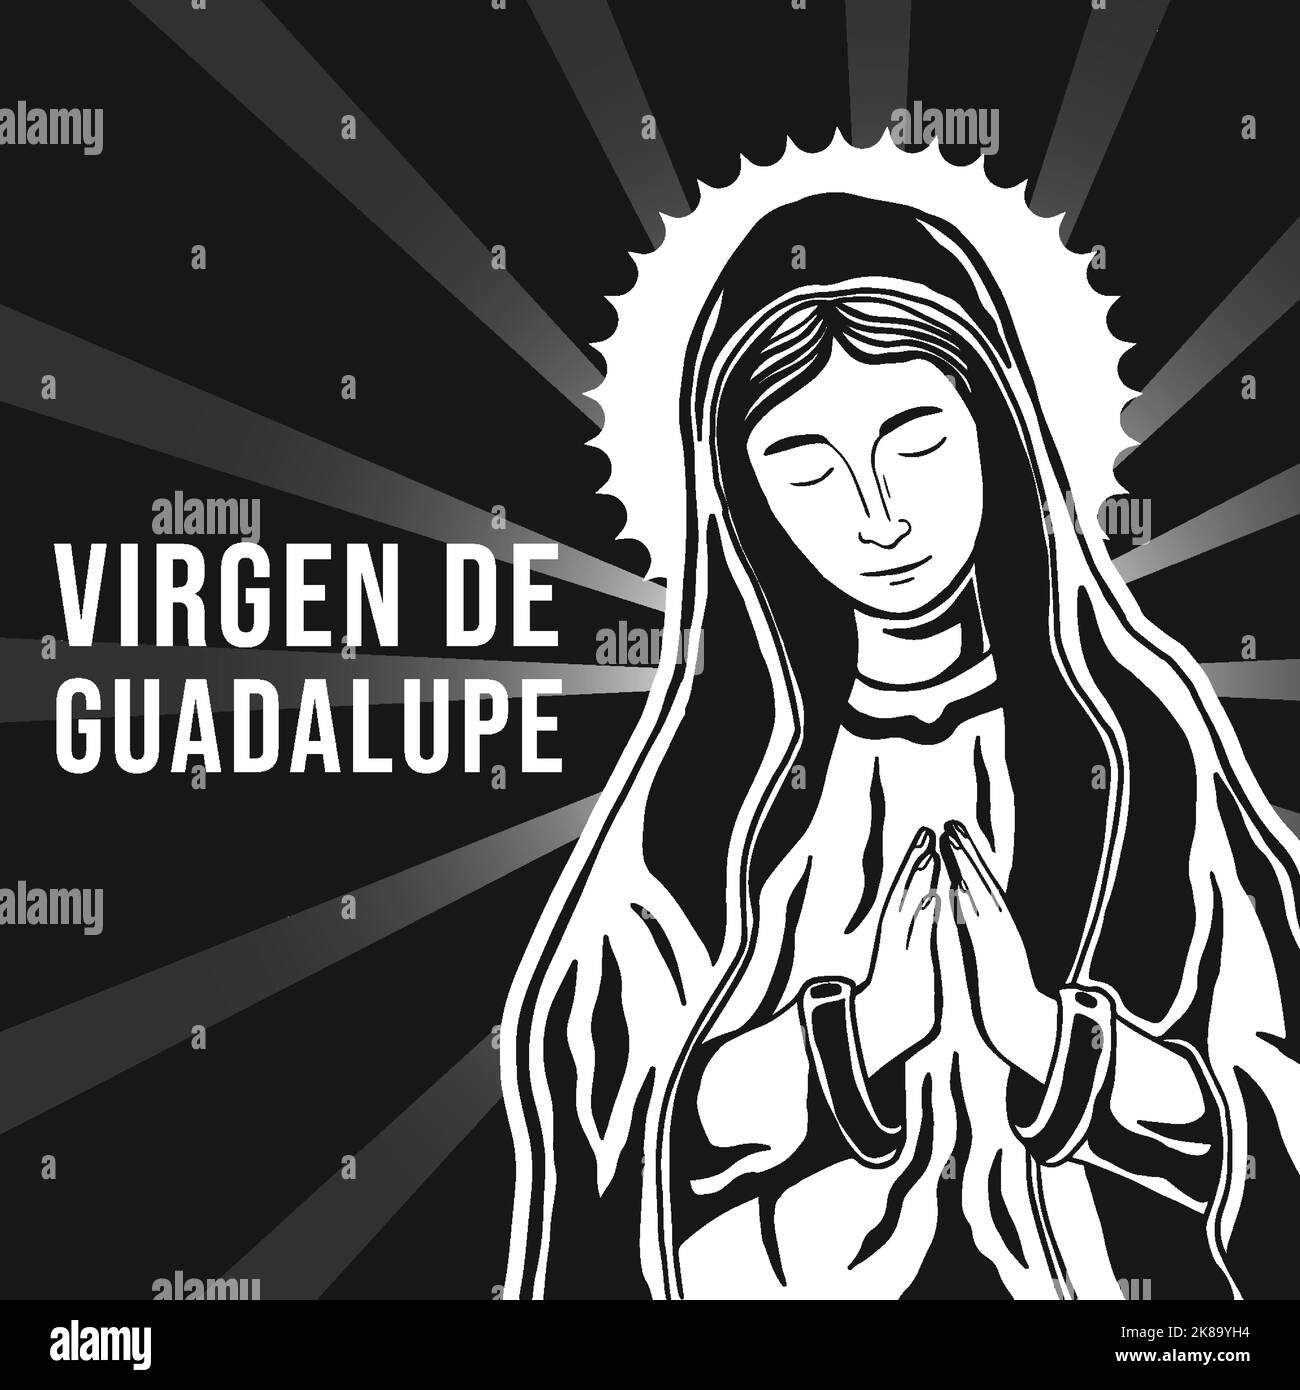 Handgezeichnete virgen de guadalupe-Illustration in schwarz-weiß Stock Vektor